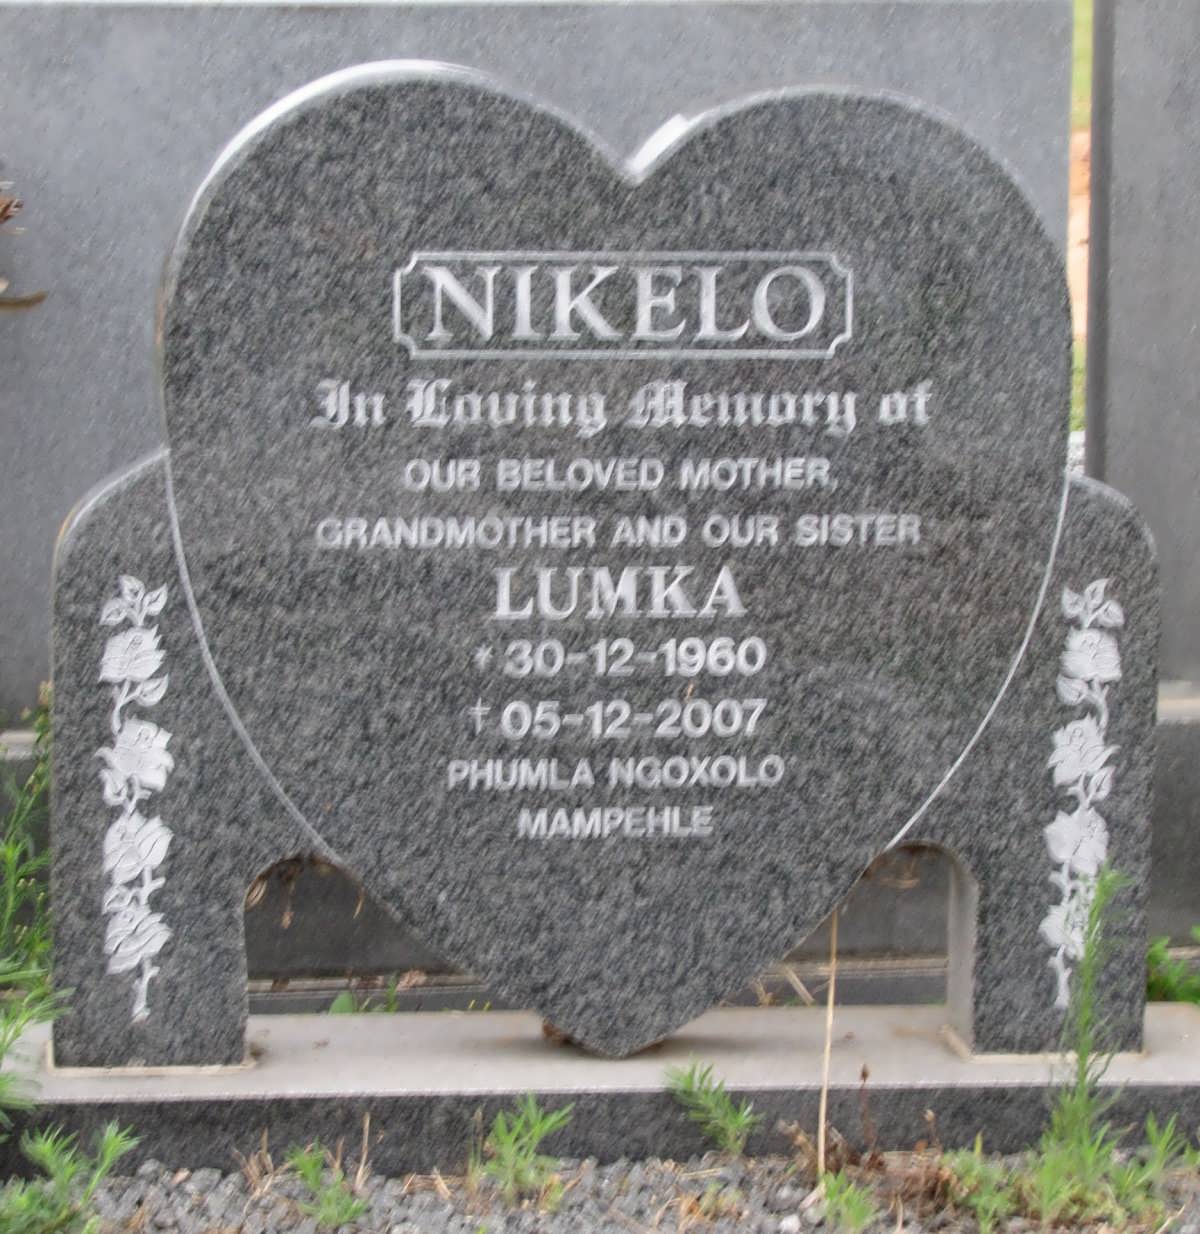 NIKELO Lumka 1960-2007